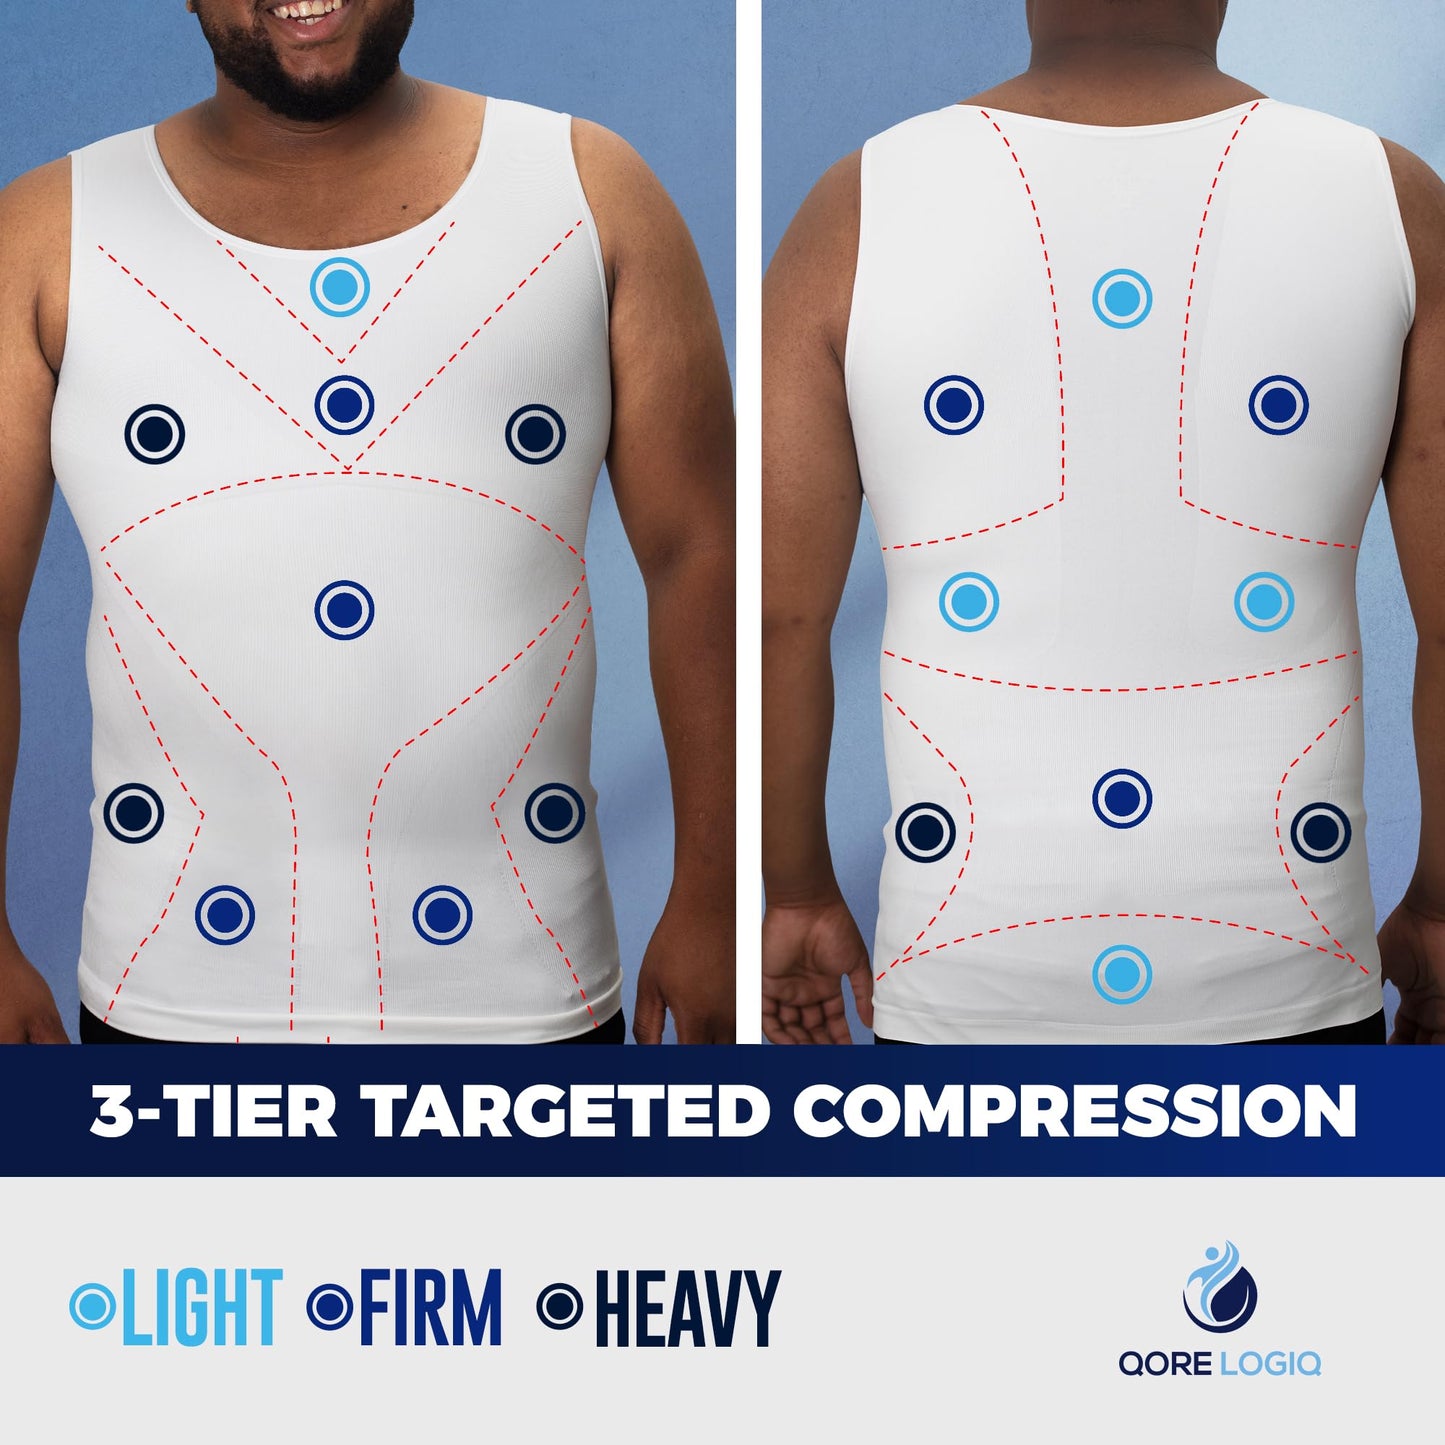 Men's Gynecomastia Compression Shirt, Tank Top Body Shaper